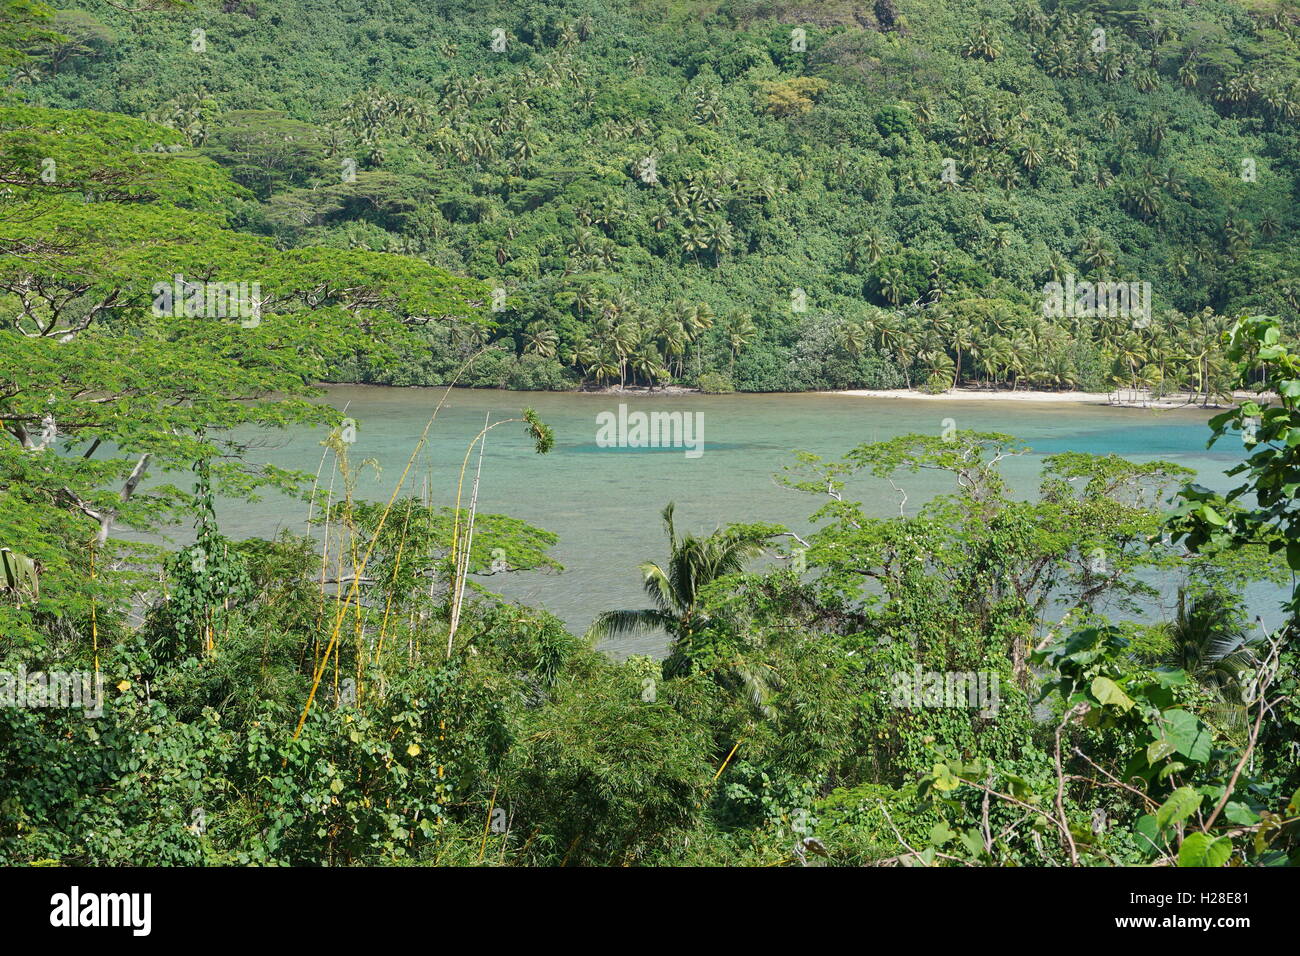 Paysage côtier de l'île de Huahine, le lagon entouré par une végétation luxuriante, l'océan Pacifique sud, la Polynésie Française Banque D'Images